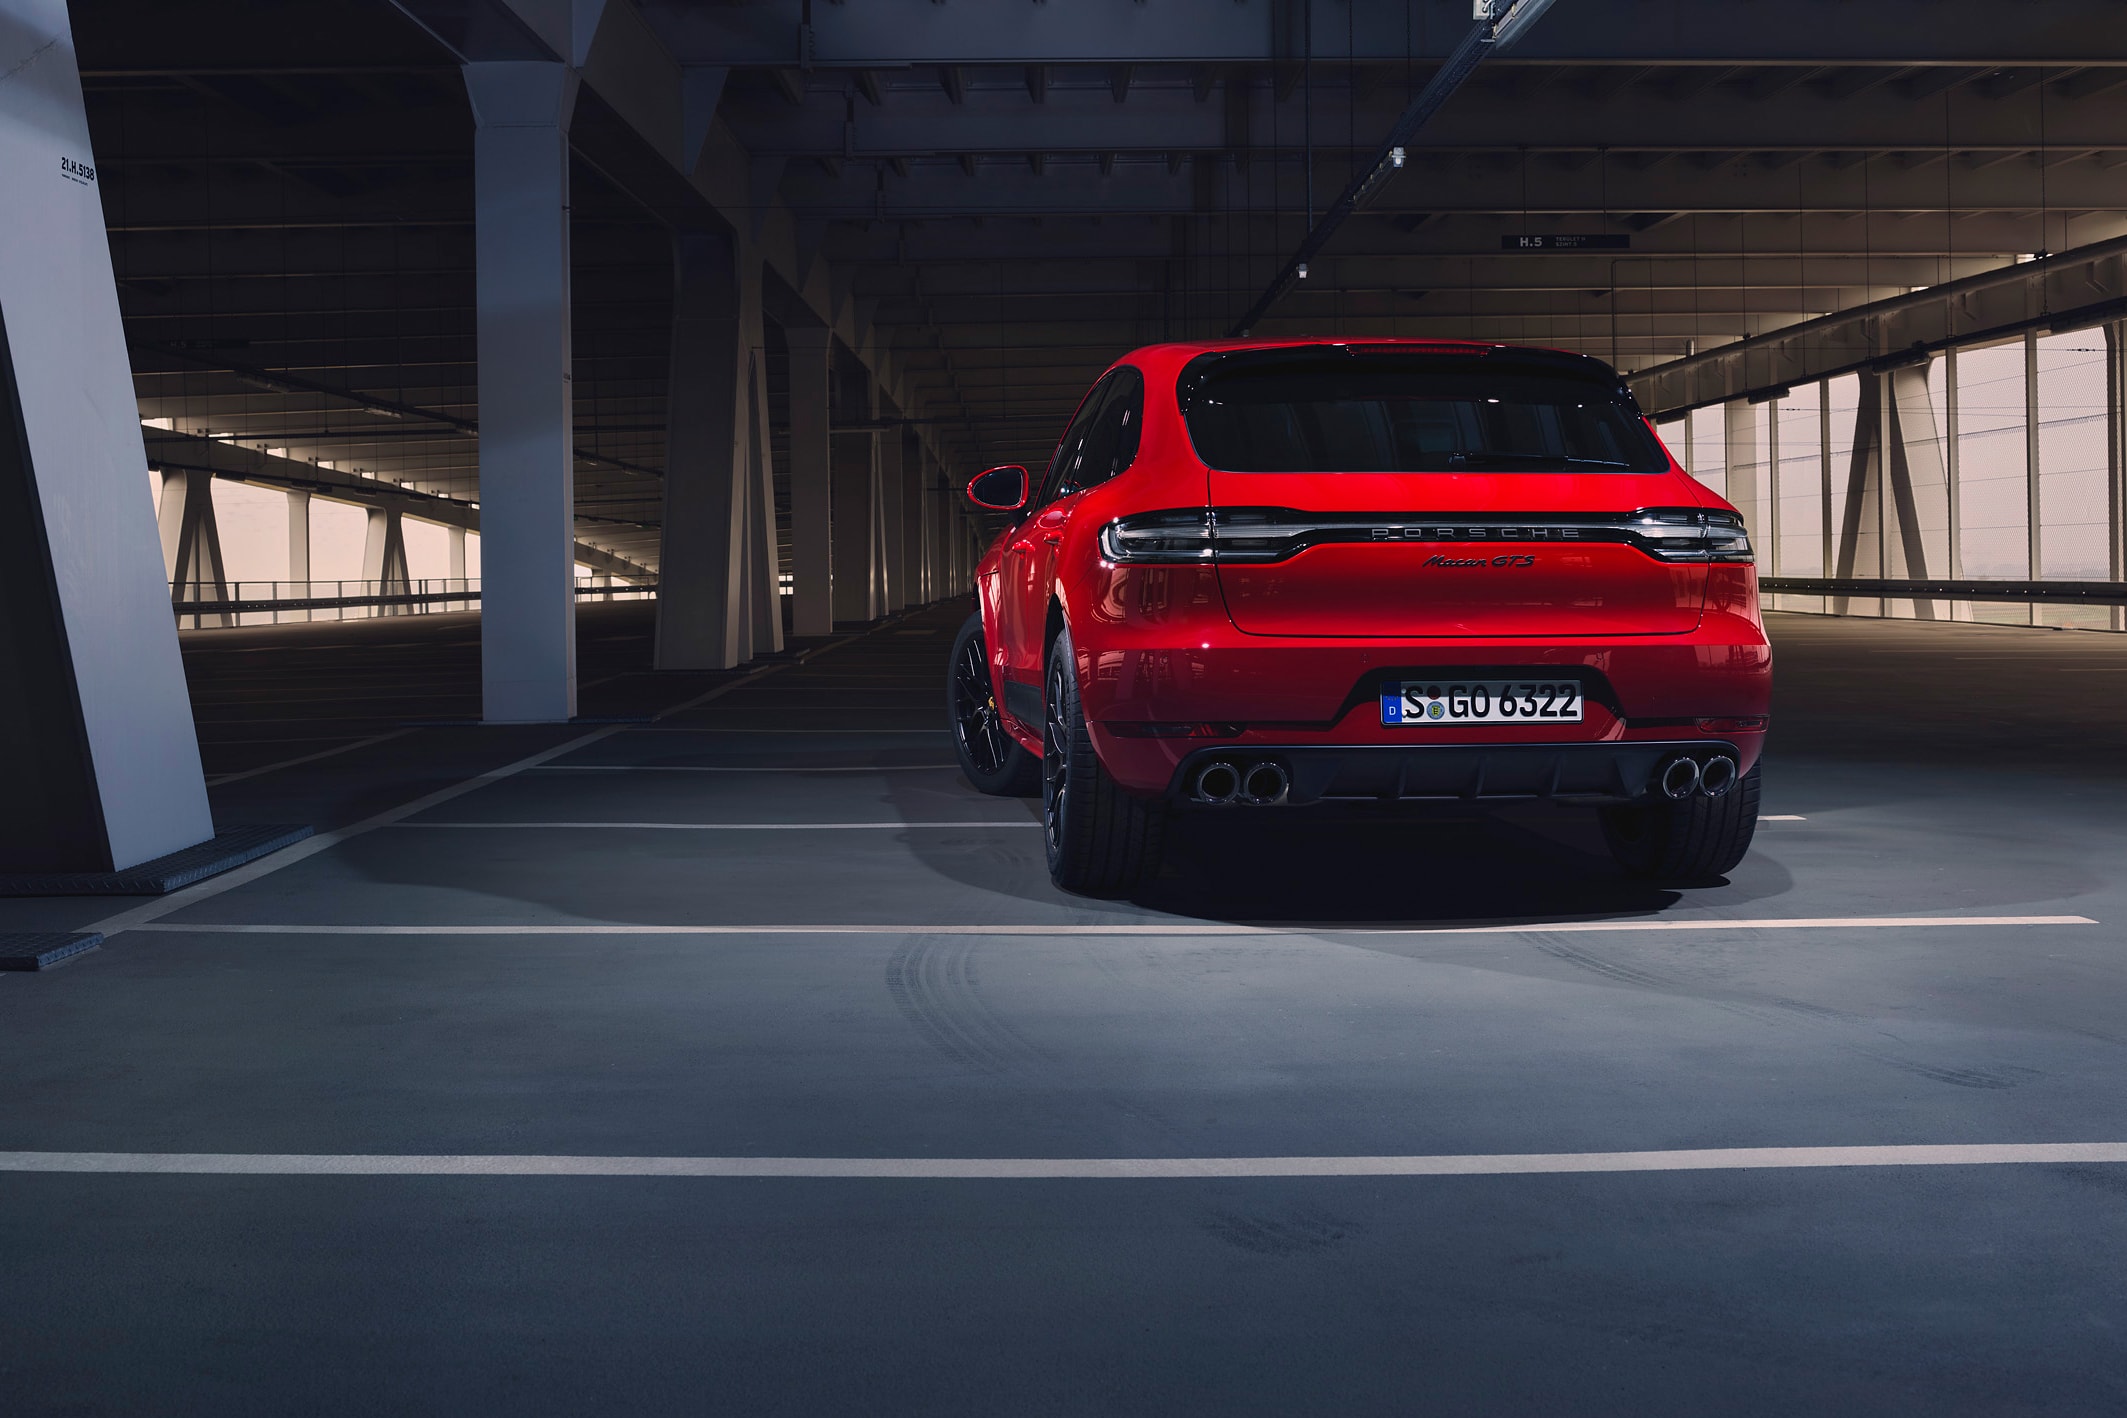 Porsche GTS Macan 2019